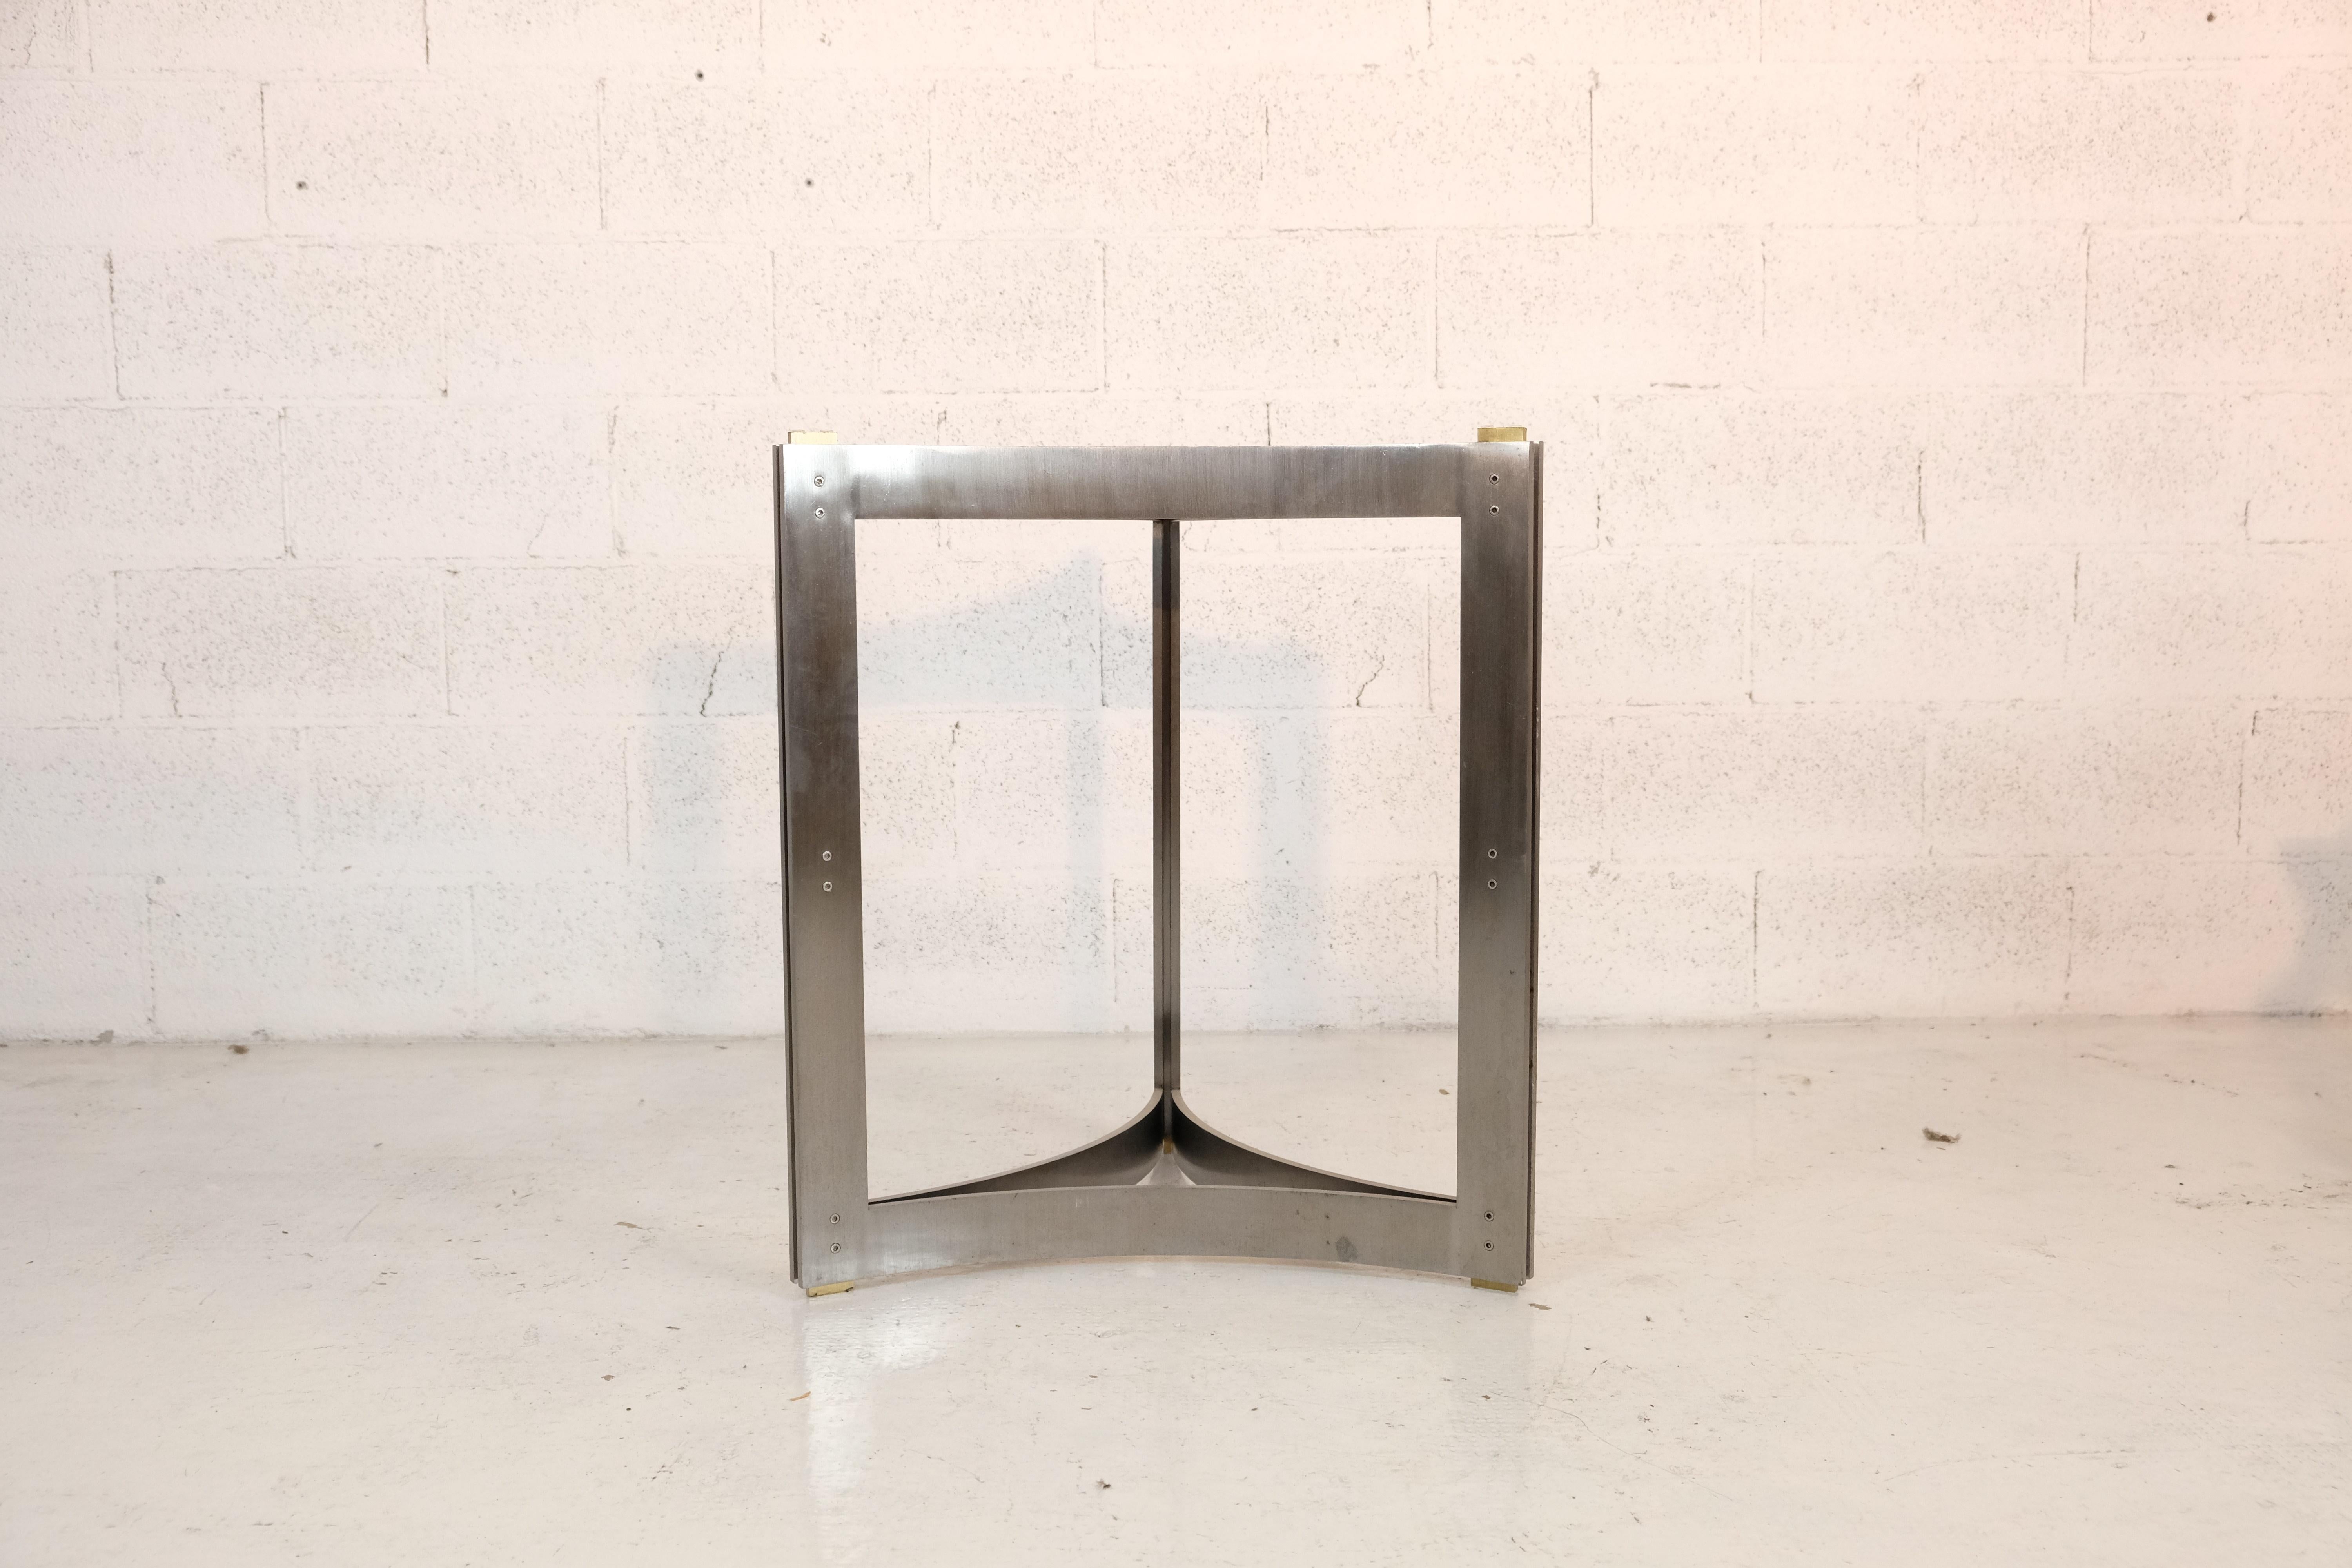 Design/One dans le style de Carlo Scarpa
Structure en métal étiré et plateau en verre
Dimensions : Diamètre 120 cm - H 74 cm - poids 70 kg
CONDITION : très bon avec de petits et inévitables signes d'âge et d'utilisation.